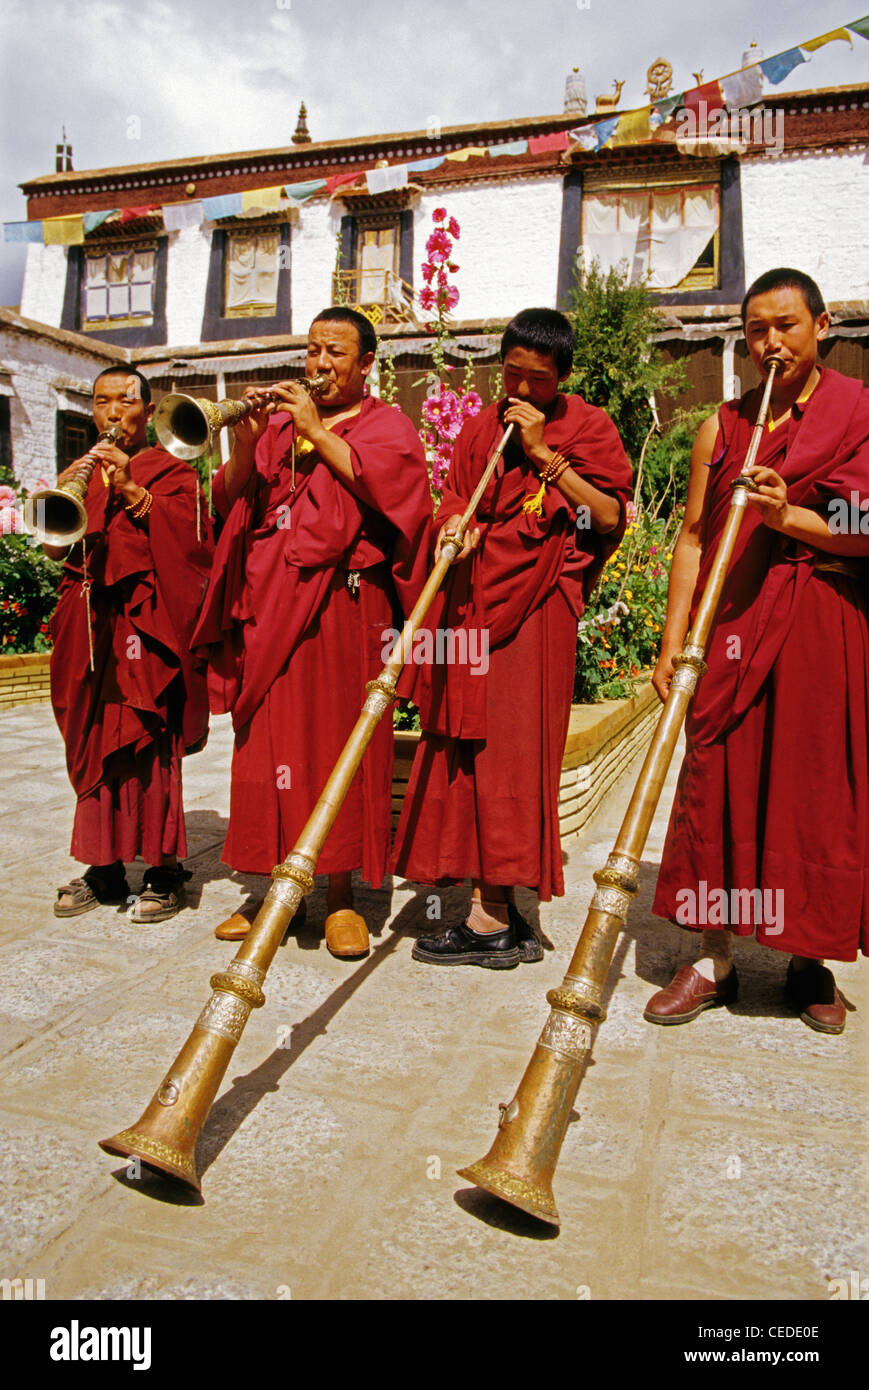 Moines tibétains jouant des instruments à vent de musique de cérémonie traditionnelle au temple près de Lhassa Banque D'Images